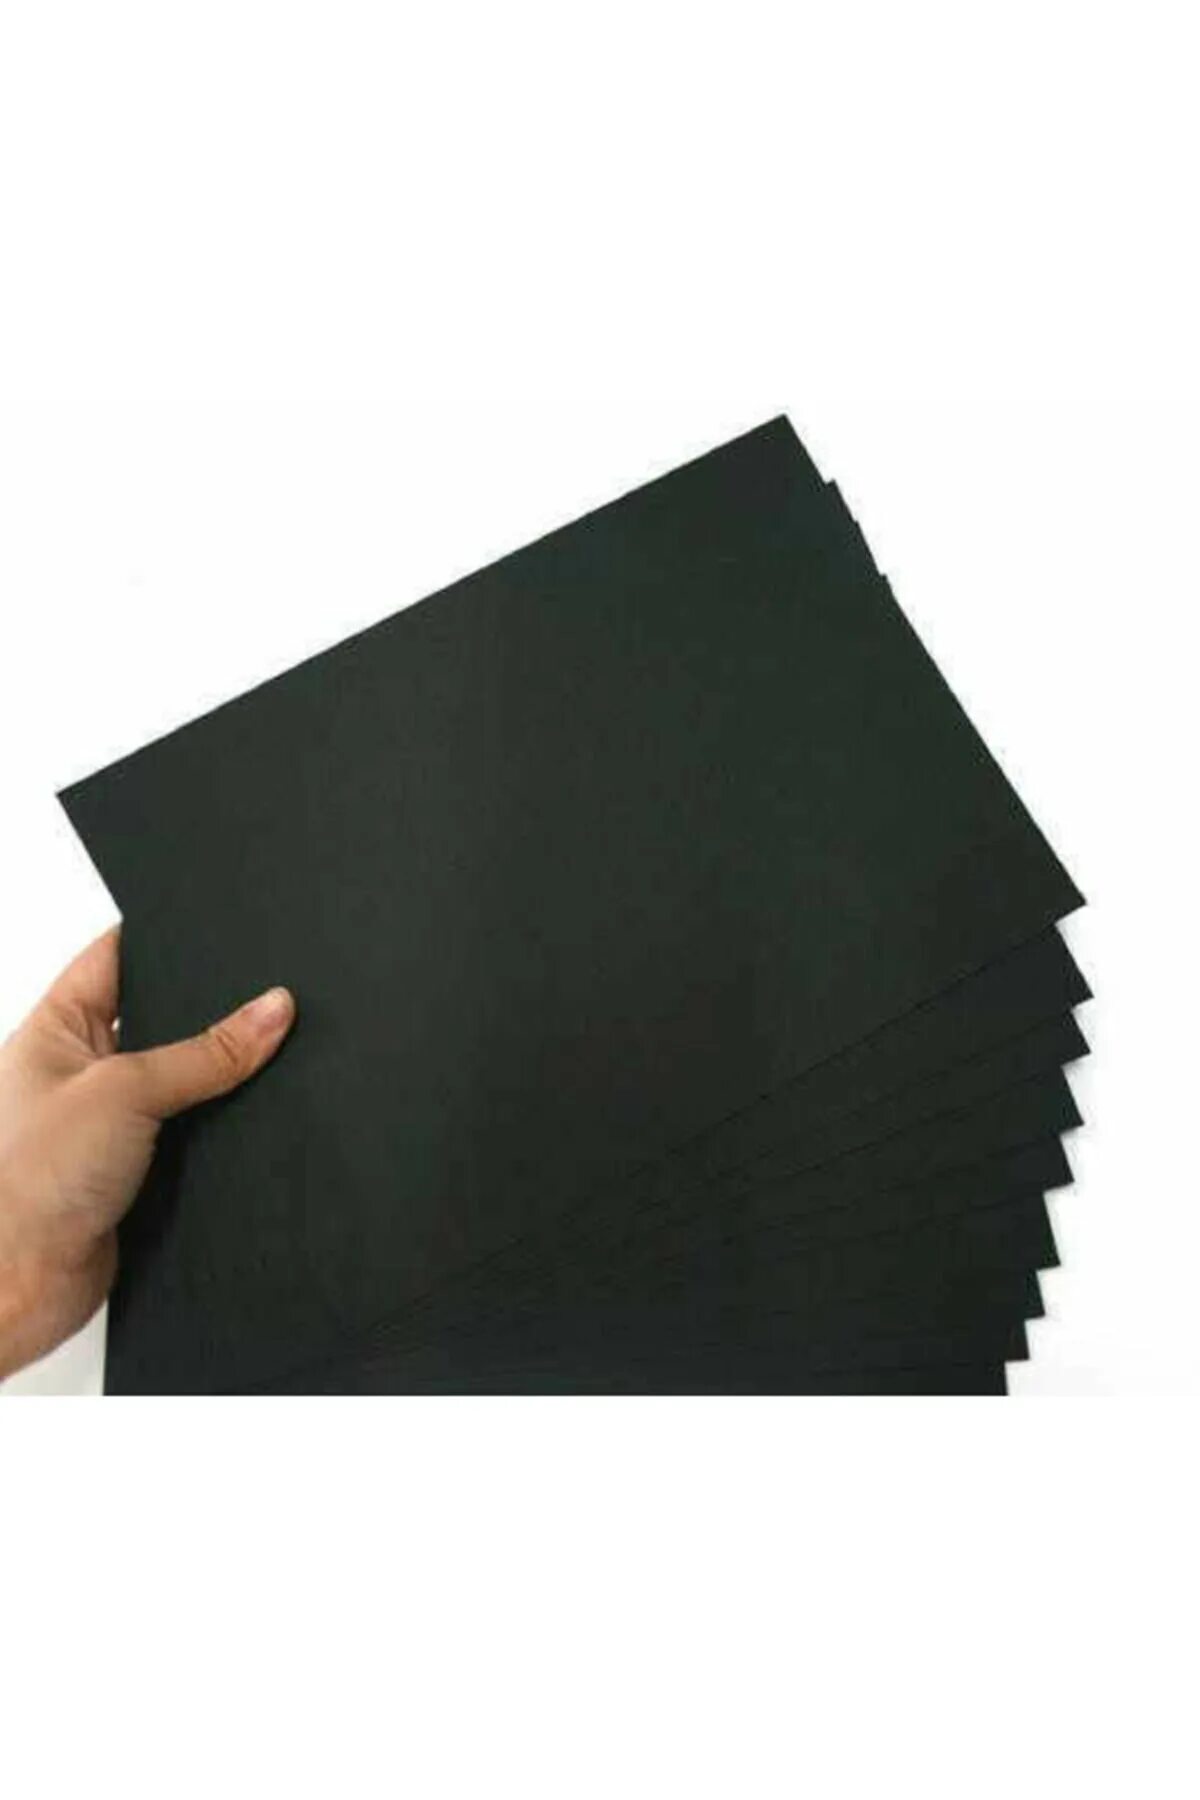 Картон a4 черный двухсторонний. Маркировочная бумага черная а3 Формат. Картон черный а0. Черная картонная бумага. Лист картона черный